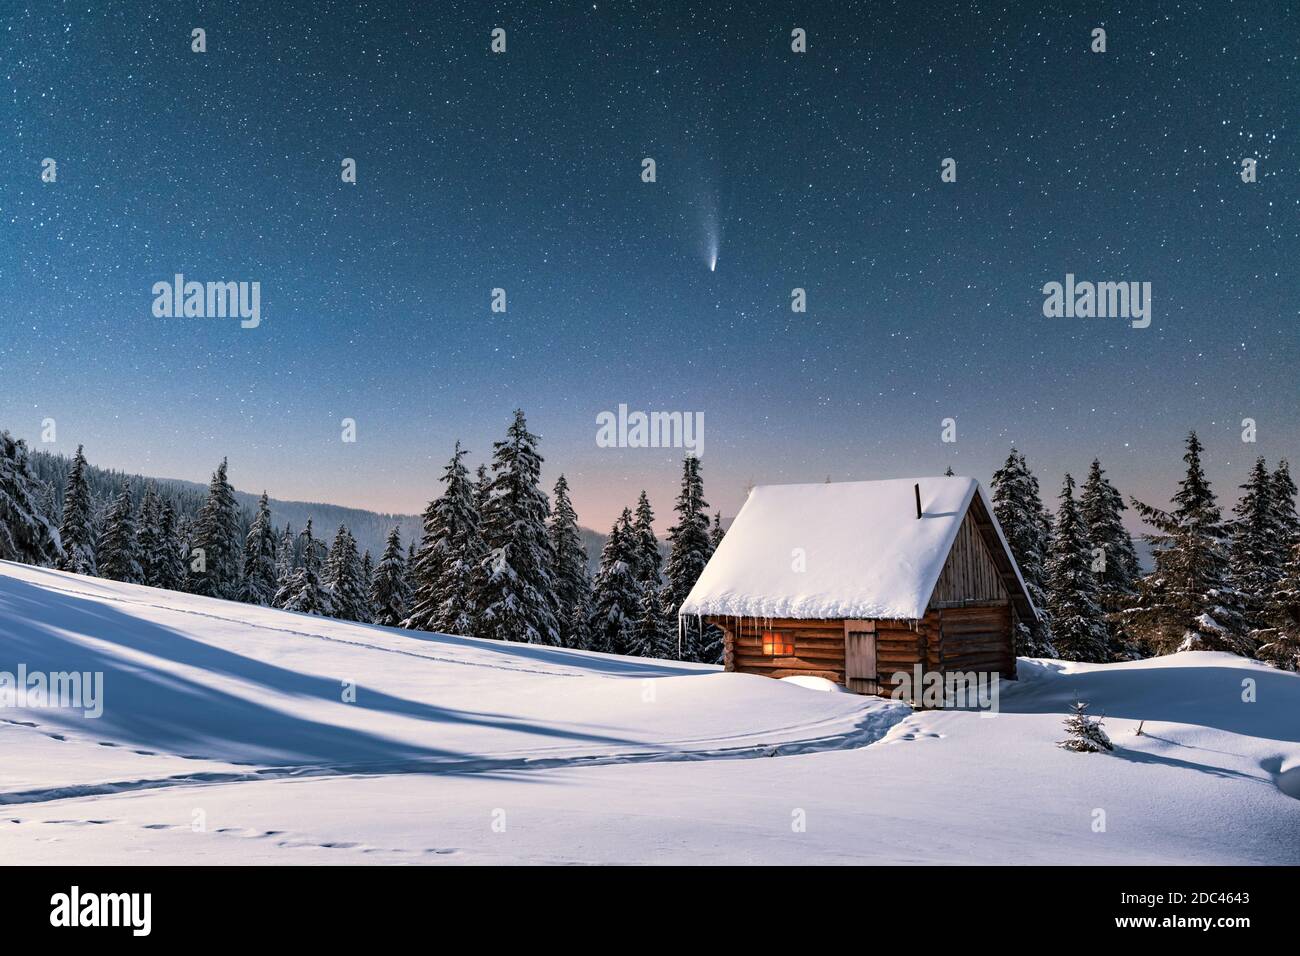 Fantastische Winterlandschaft mit Holzhaus in verschneiten Bergen. Sternenhimmel mit Kometen und schneebedeckter Hütte. Weihnachtsurlaub und Winterurlaub Konzept Stockfoto